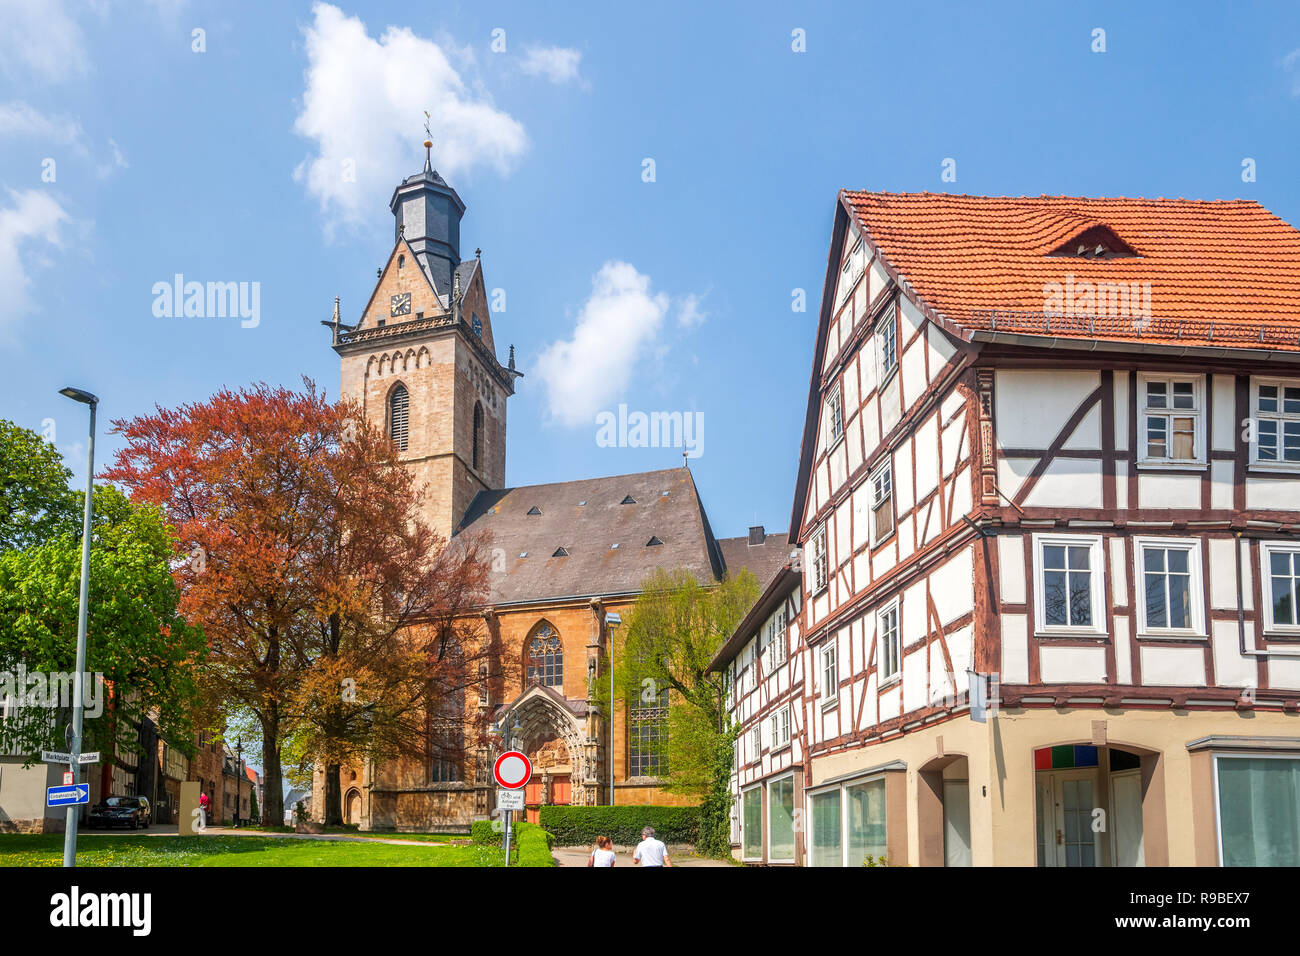 Kilians Church, Korbach, Germany Stock Photo